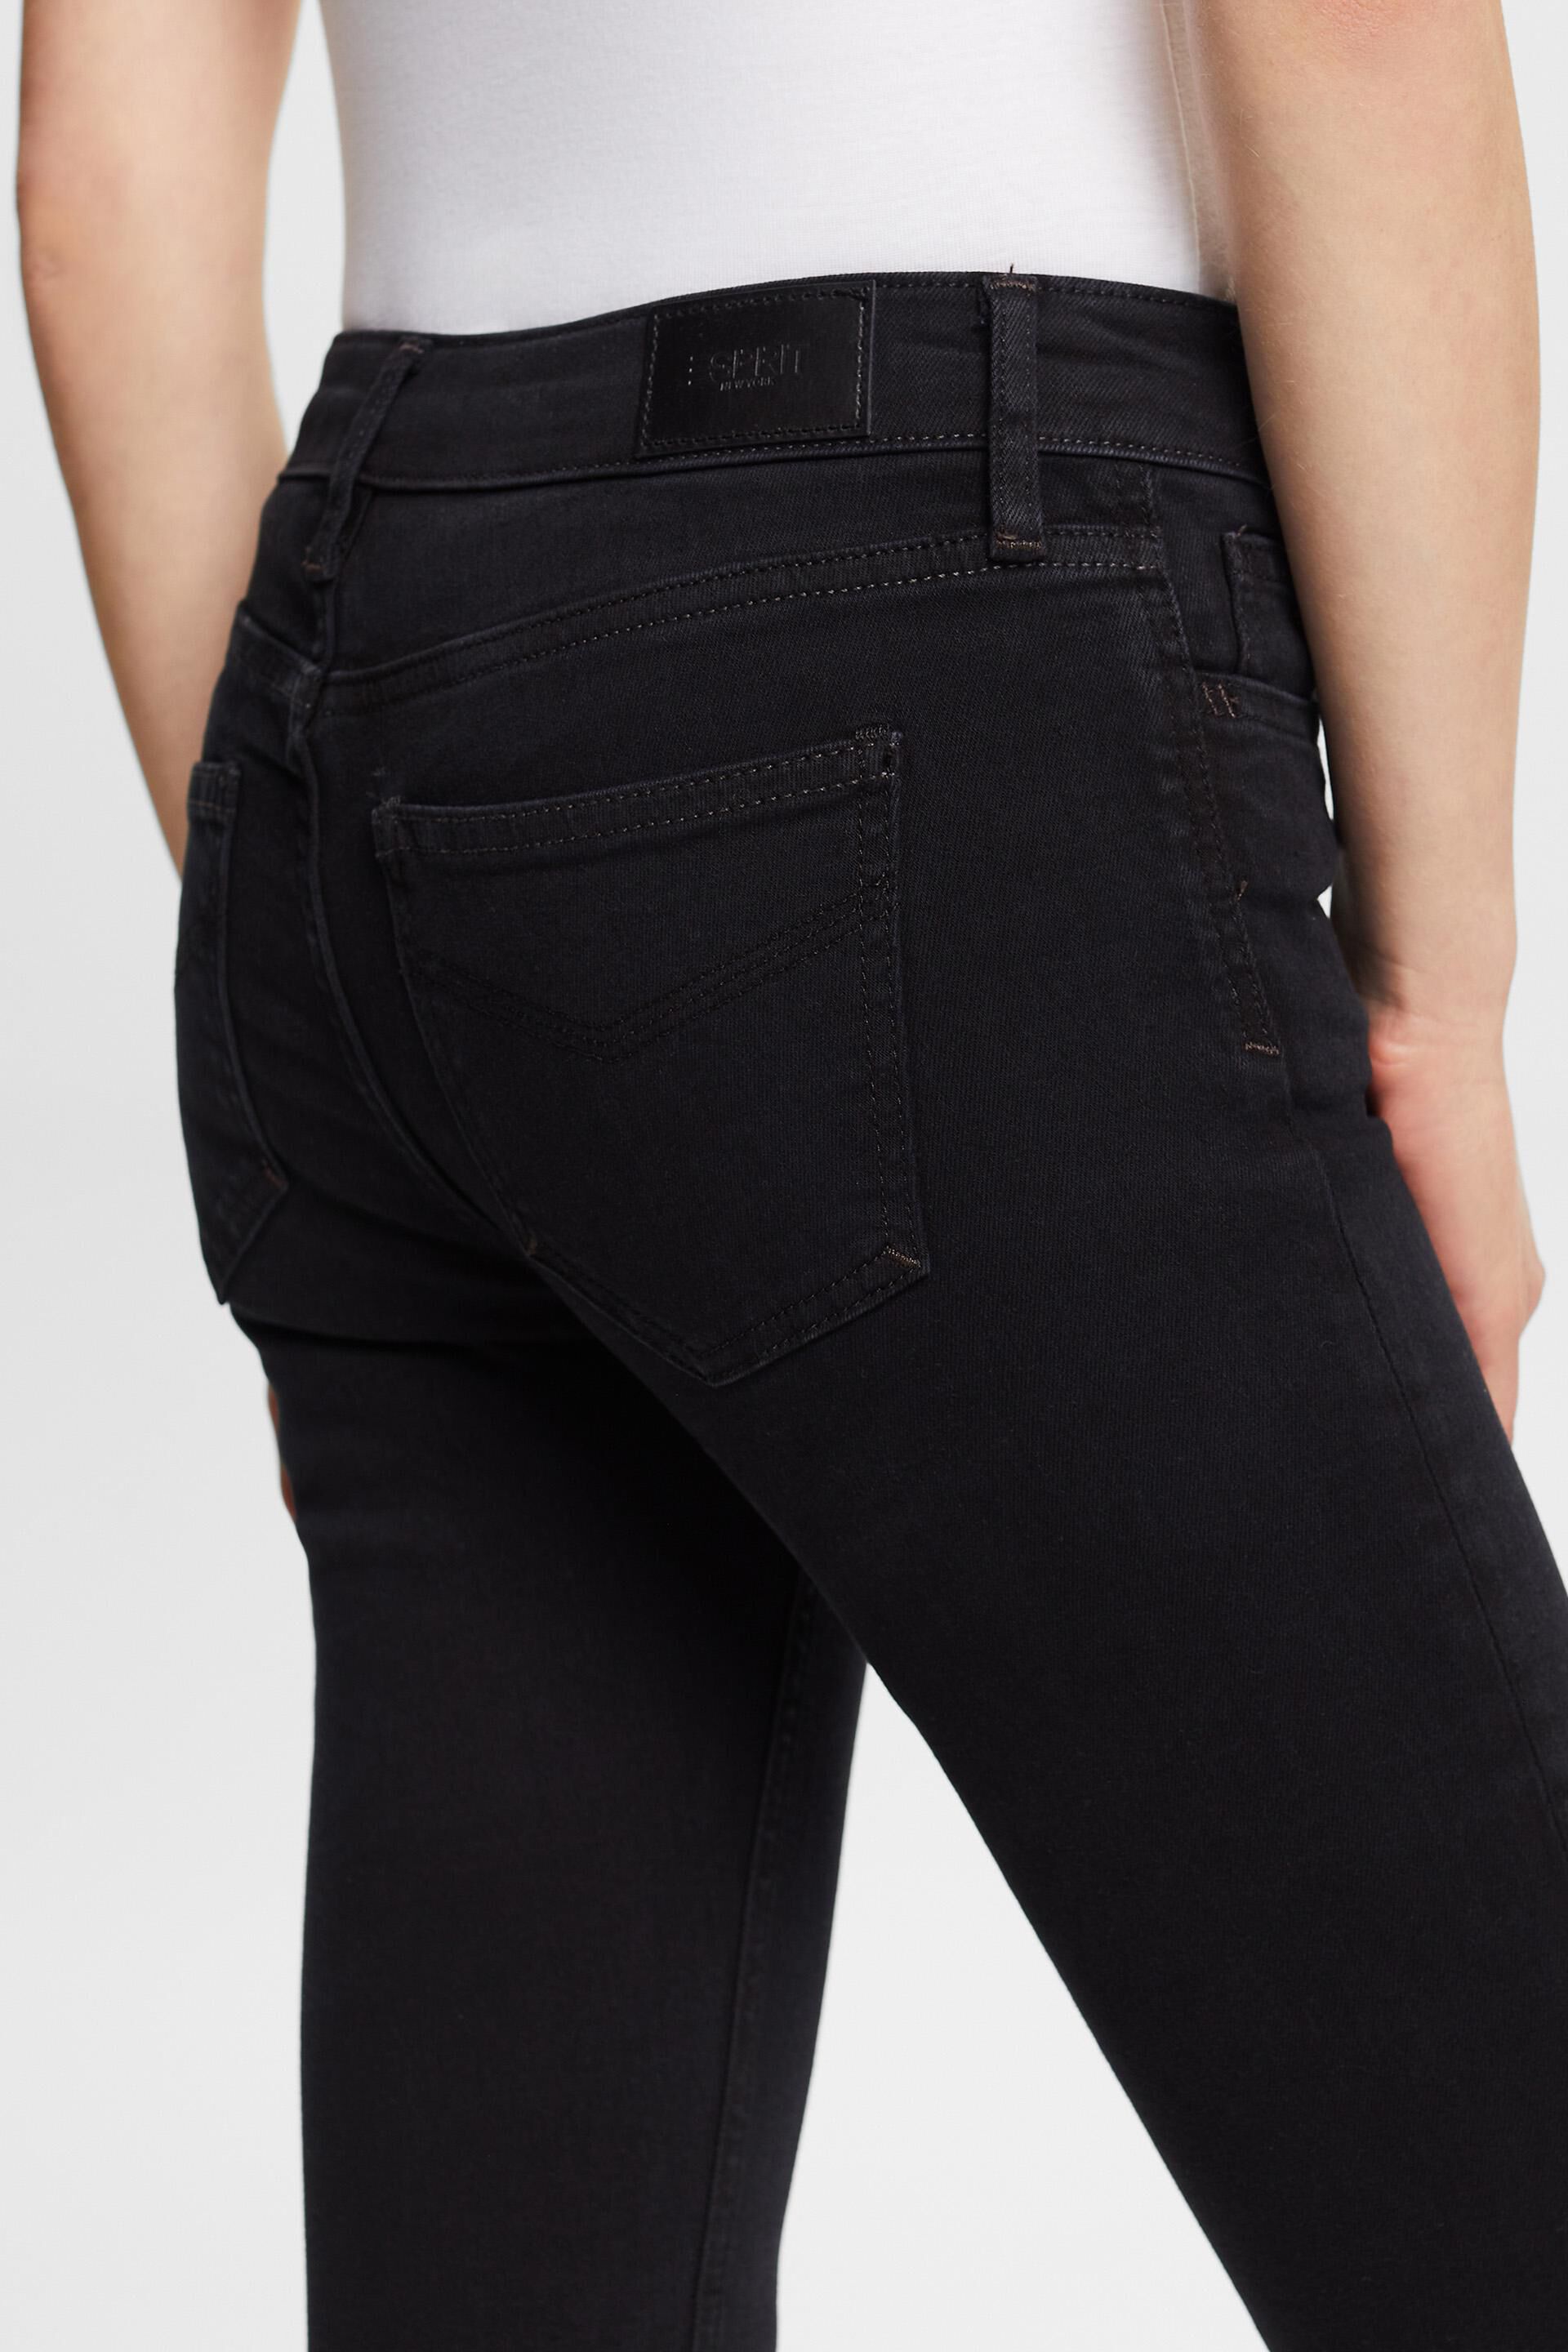 Esprit Damen Hochwertige Skinny-Fit-Jeans Bund mit mittelhohem